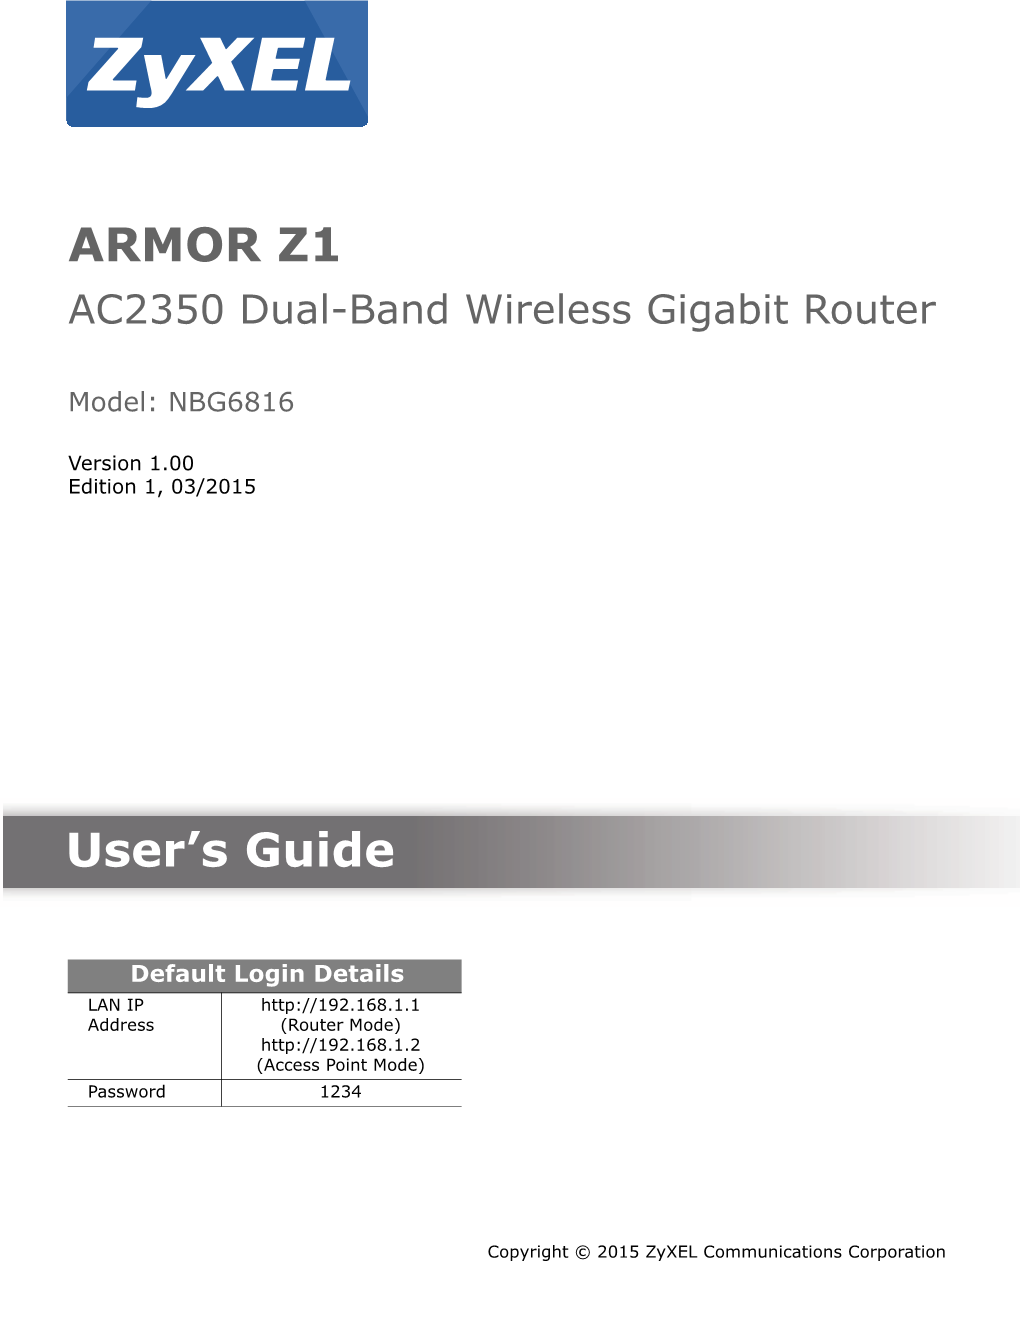 ARMOR Z1 User's Guide